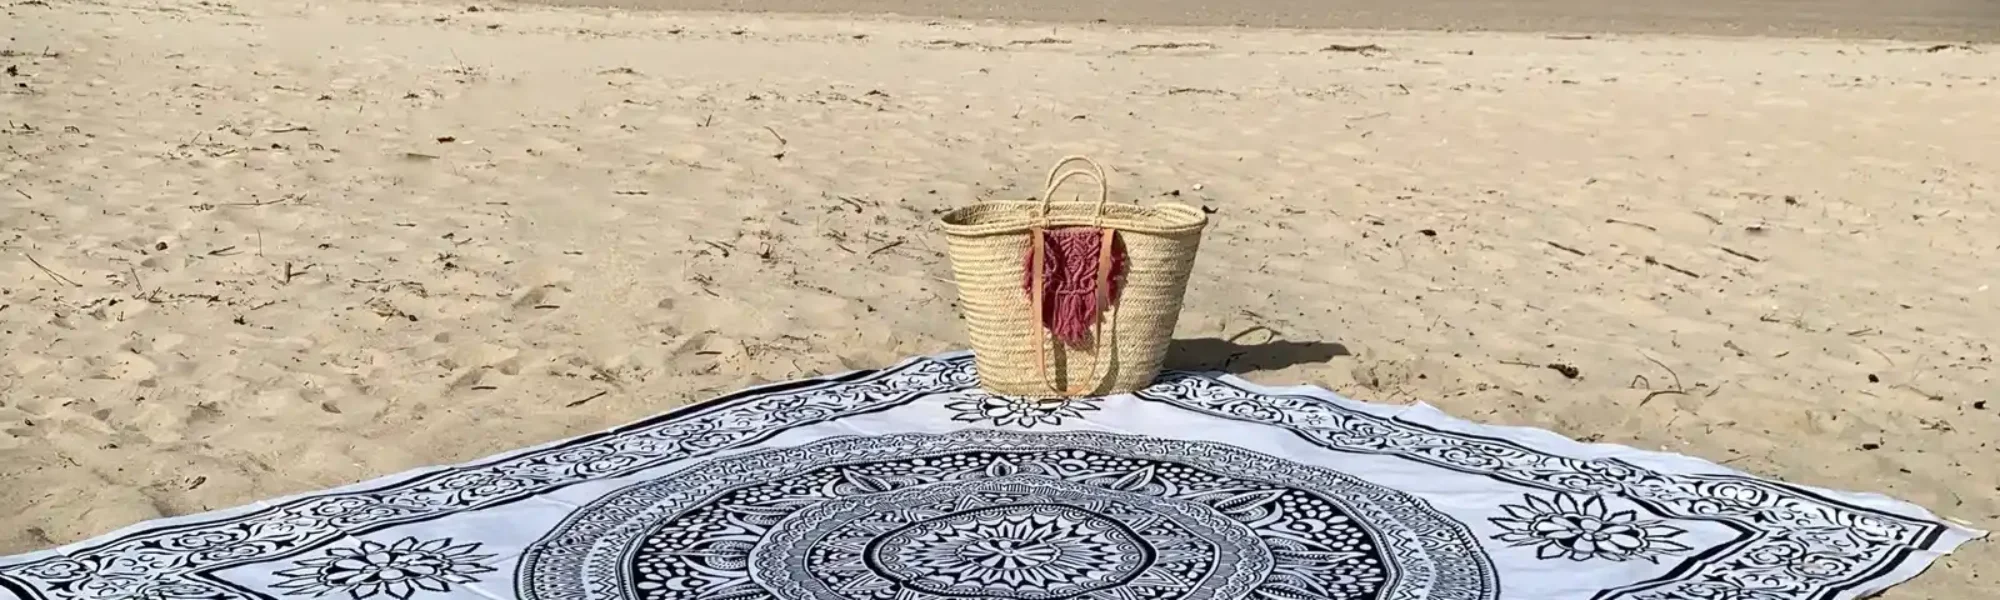 mandala en la playa